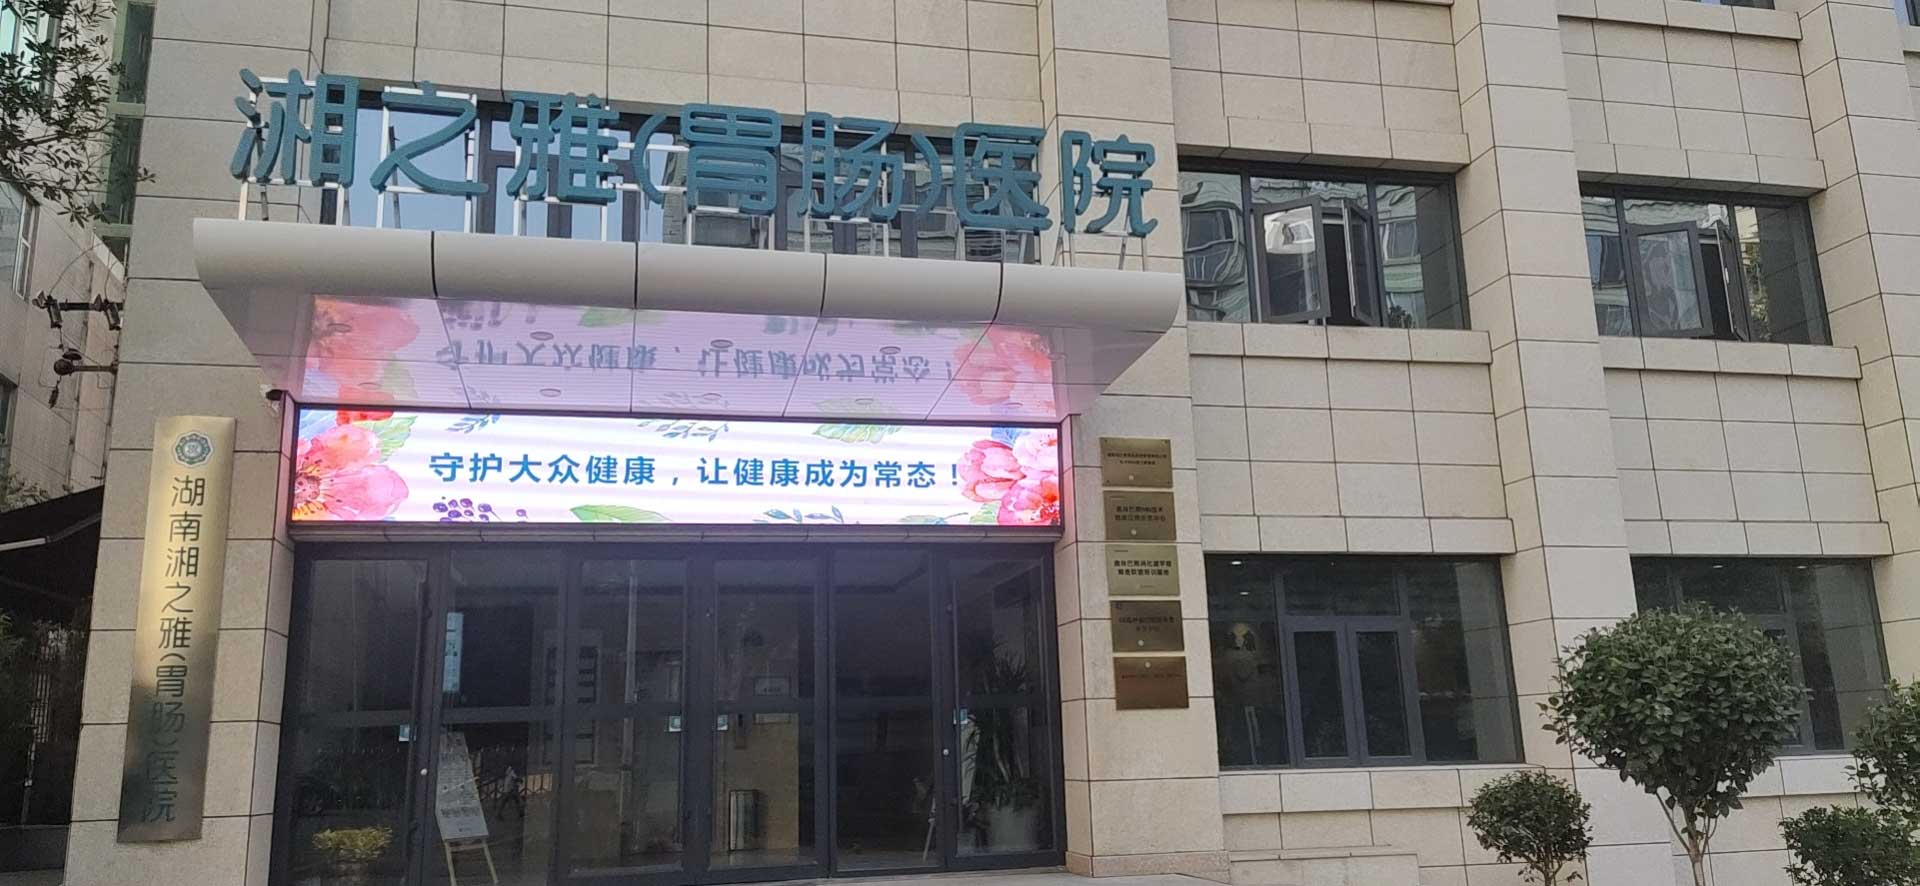 湘之雅胃腸醫院潔福PVC地板工程